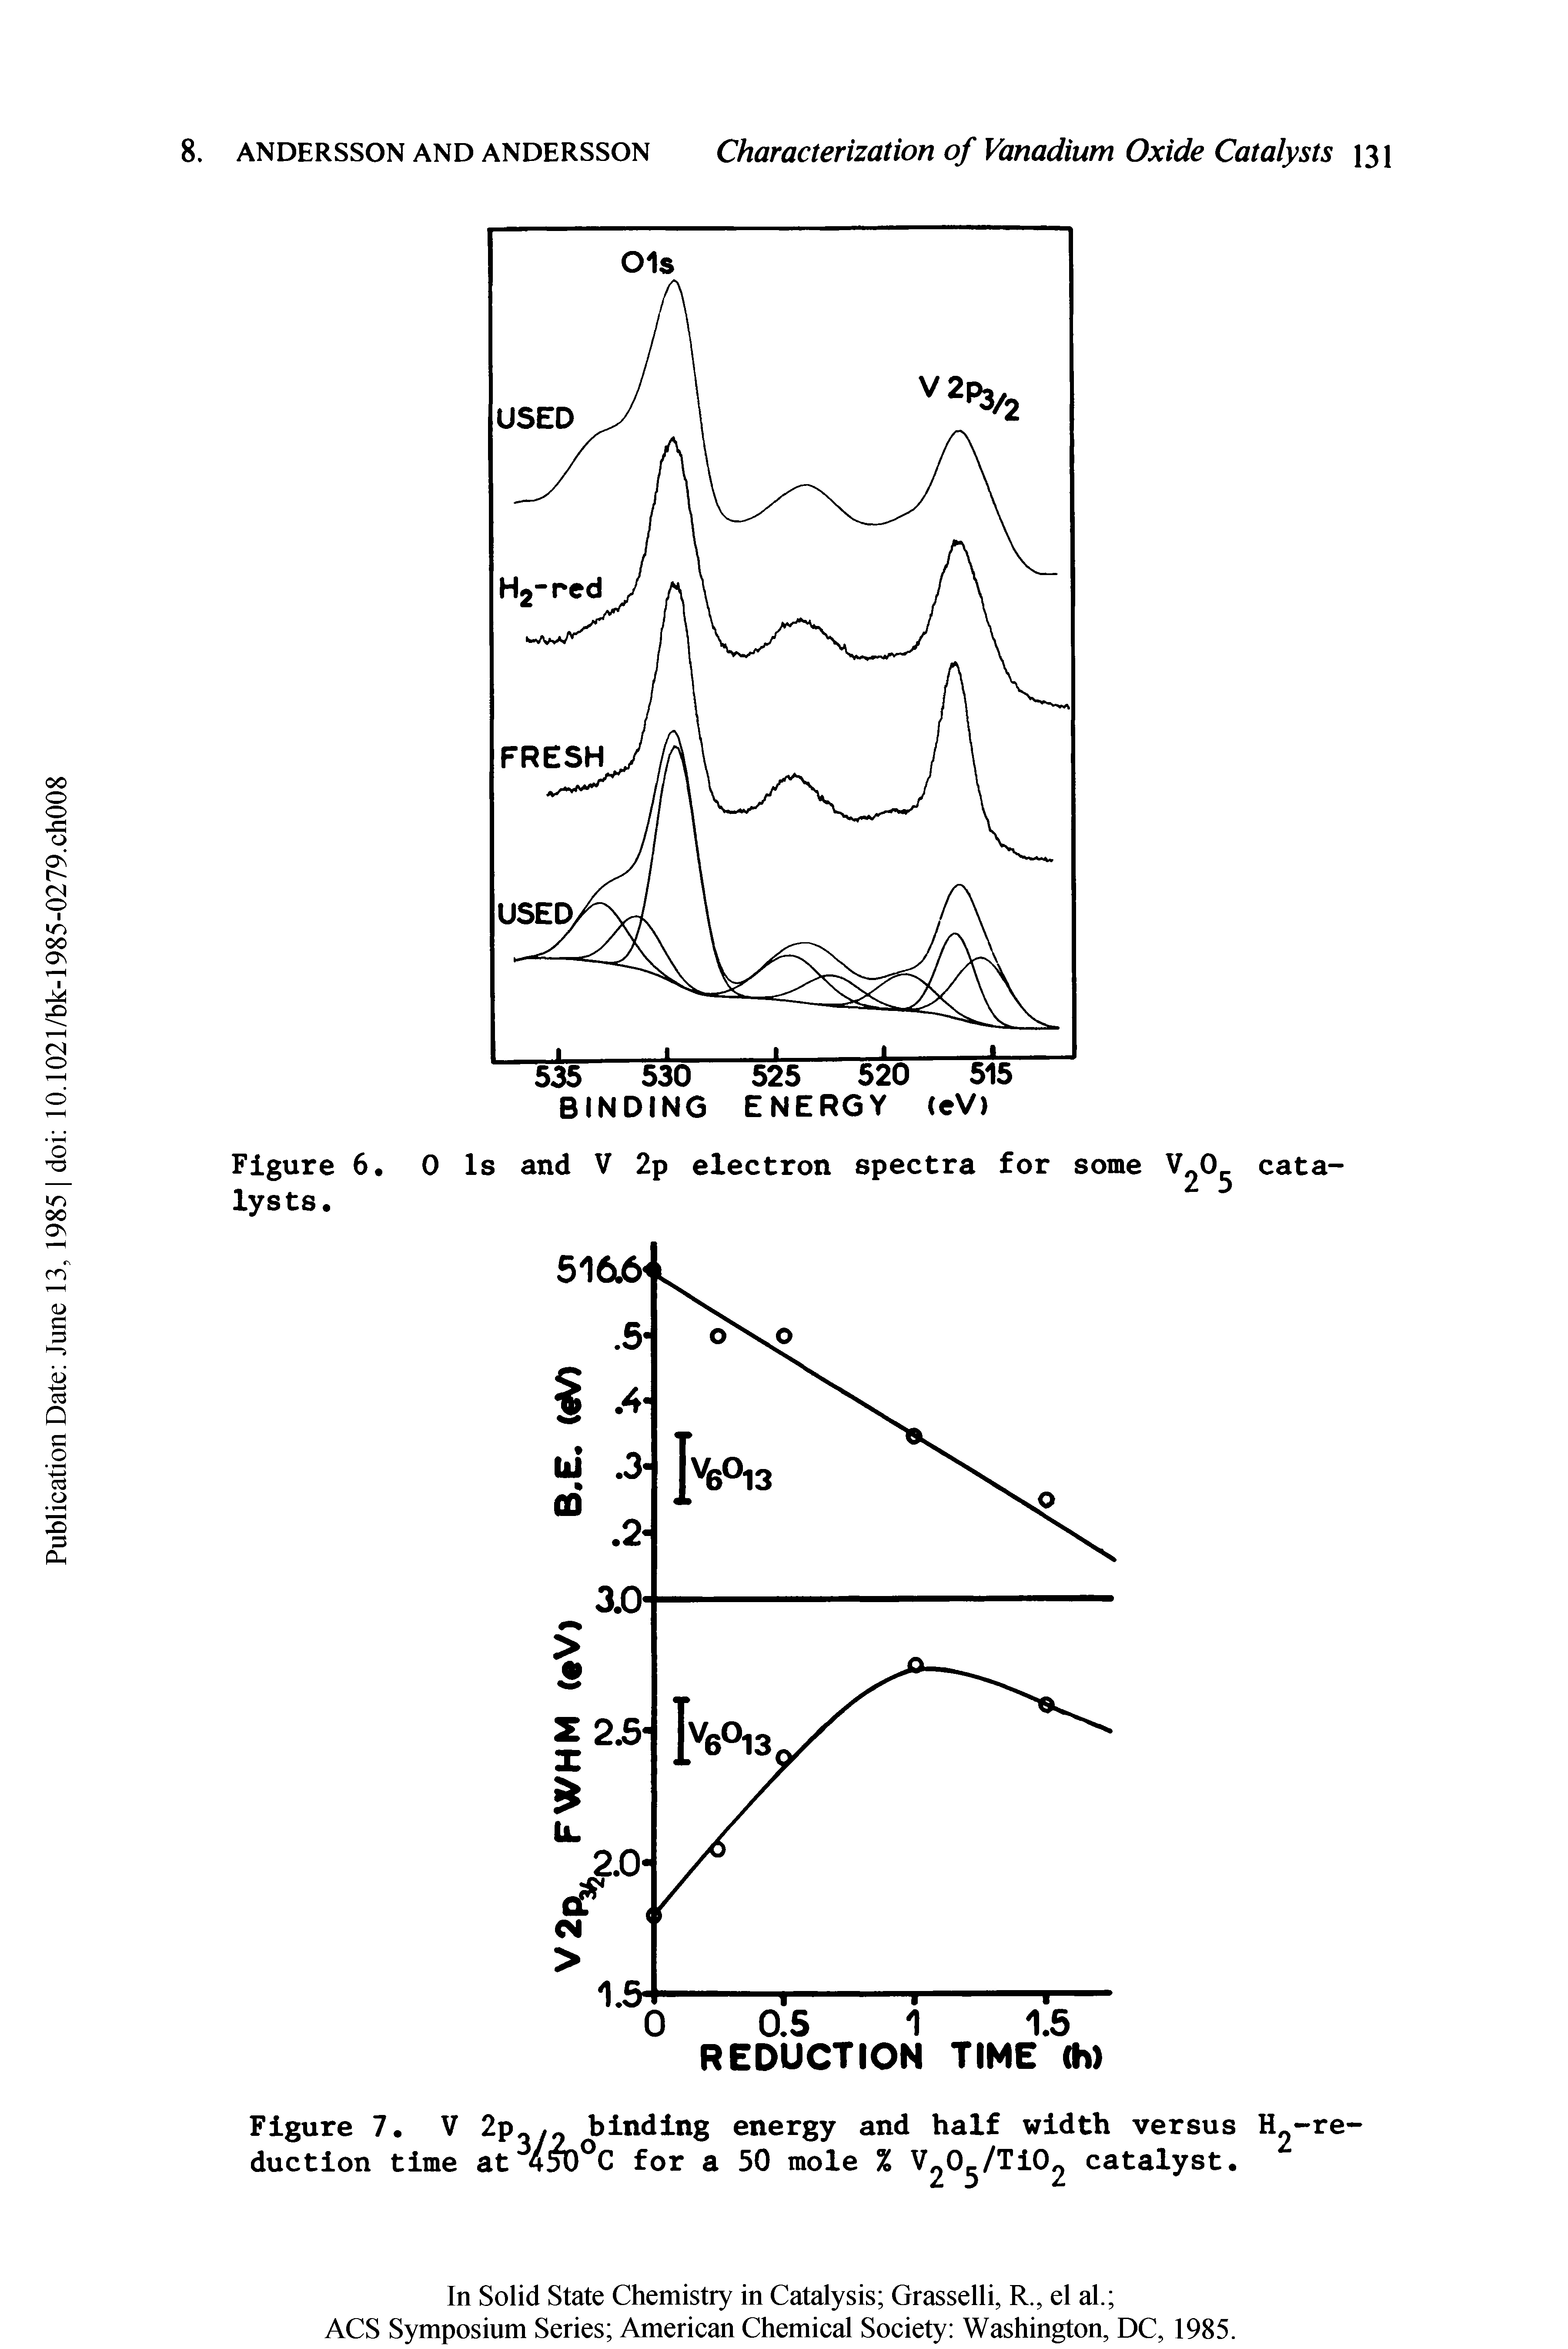 Figure 7. V 2p-y binding energy and half width versus H -re-...